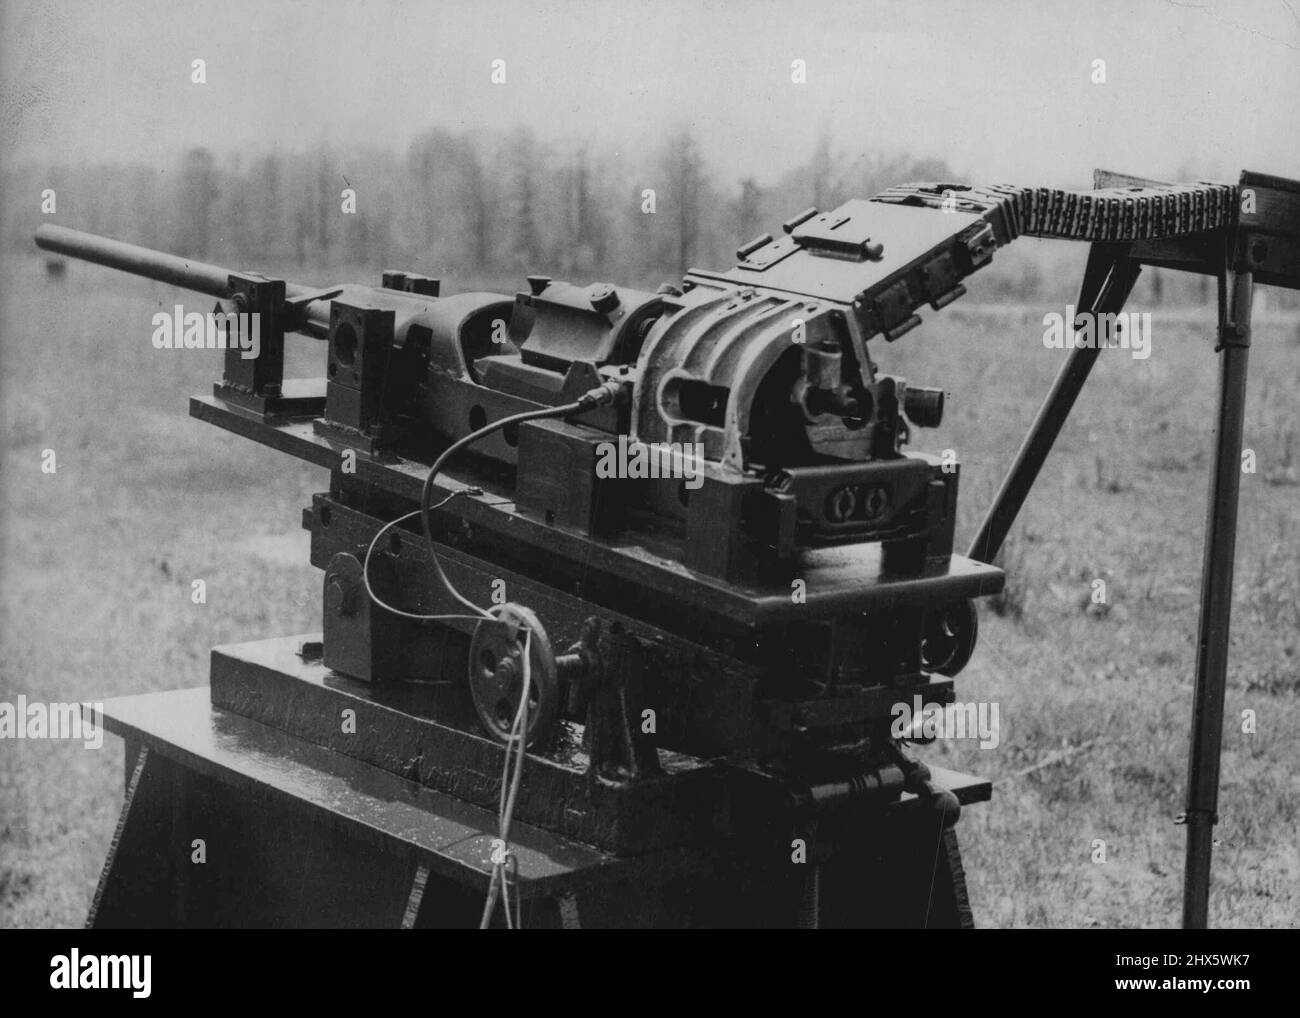 Neue Automatikpistole für US-Flugzeuge -- Die neue 20-MM-Kanone.Eine neue automatische Kanone, die M39, wurde für den Einsatz in den neuesten Kampfflugzeugen der US-Luftwaffe entwickelt.die neue Kanone mit einer 20-MM-Bohrung war das Produkt der Teamarbeit zwischen der Luftwaffe, der Armee und der Privatindustrie. 11.Mai 1954. (Foto von Paul Popper Ltd.). Stockfoto